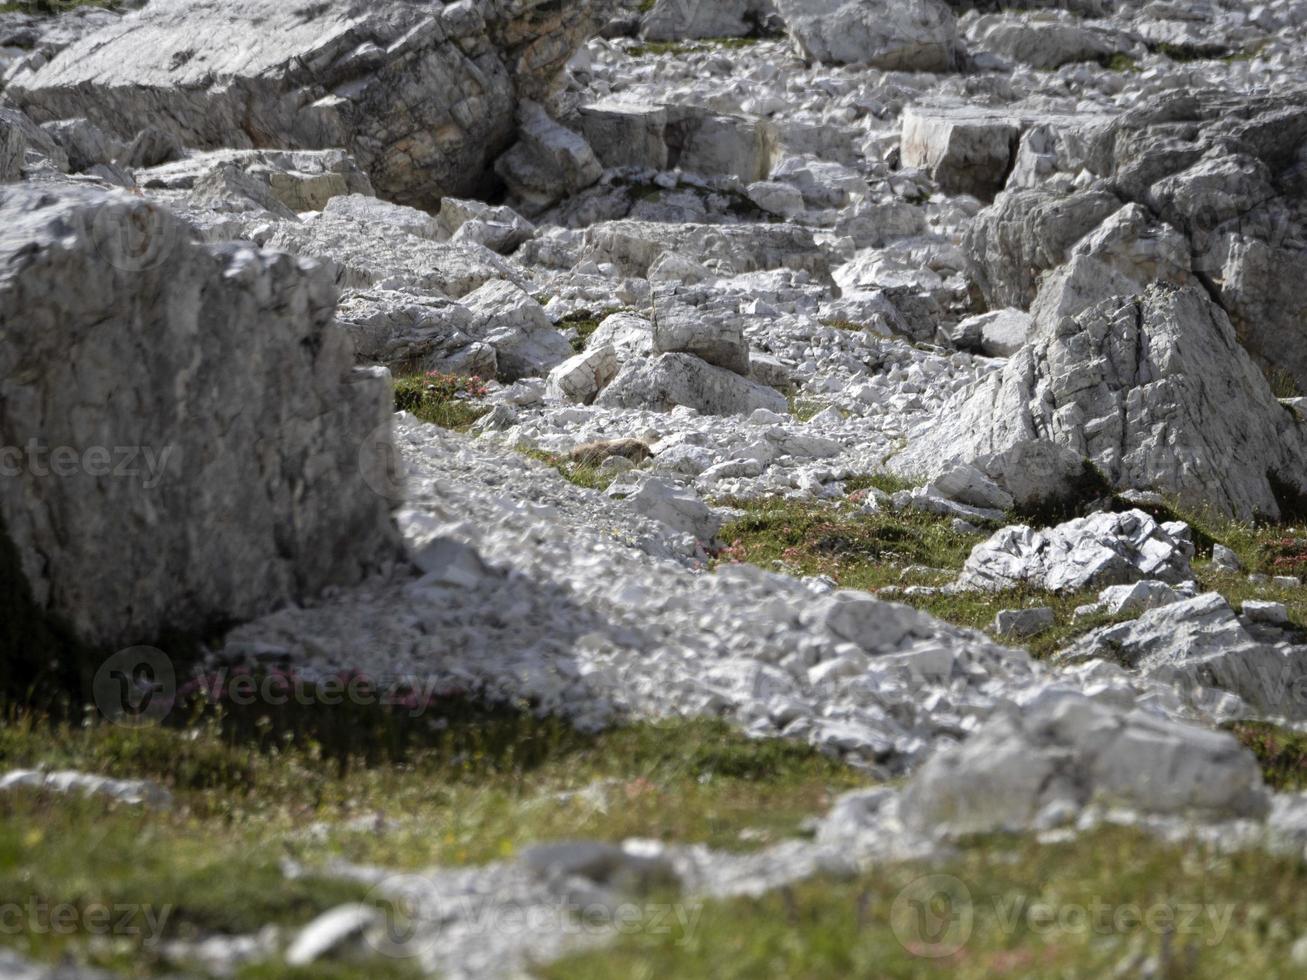 marmotte marmotte à Trois pics de lavaredo vallée dolomites montagnes panorama paysage photo